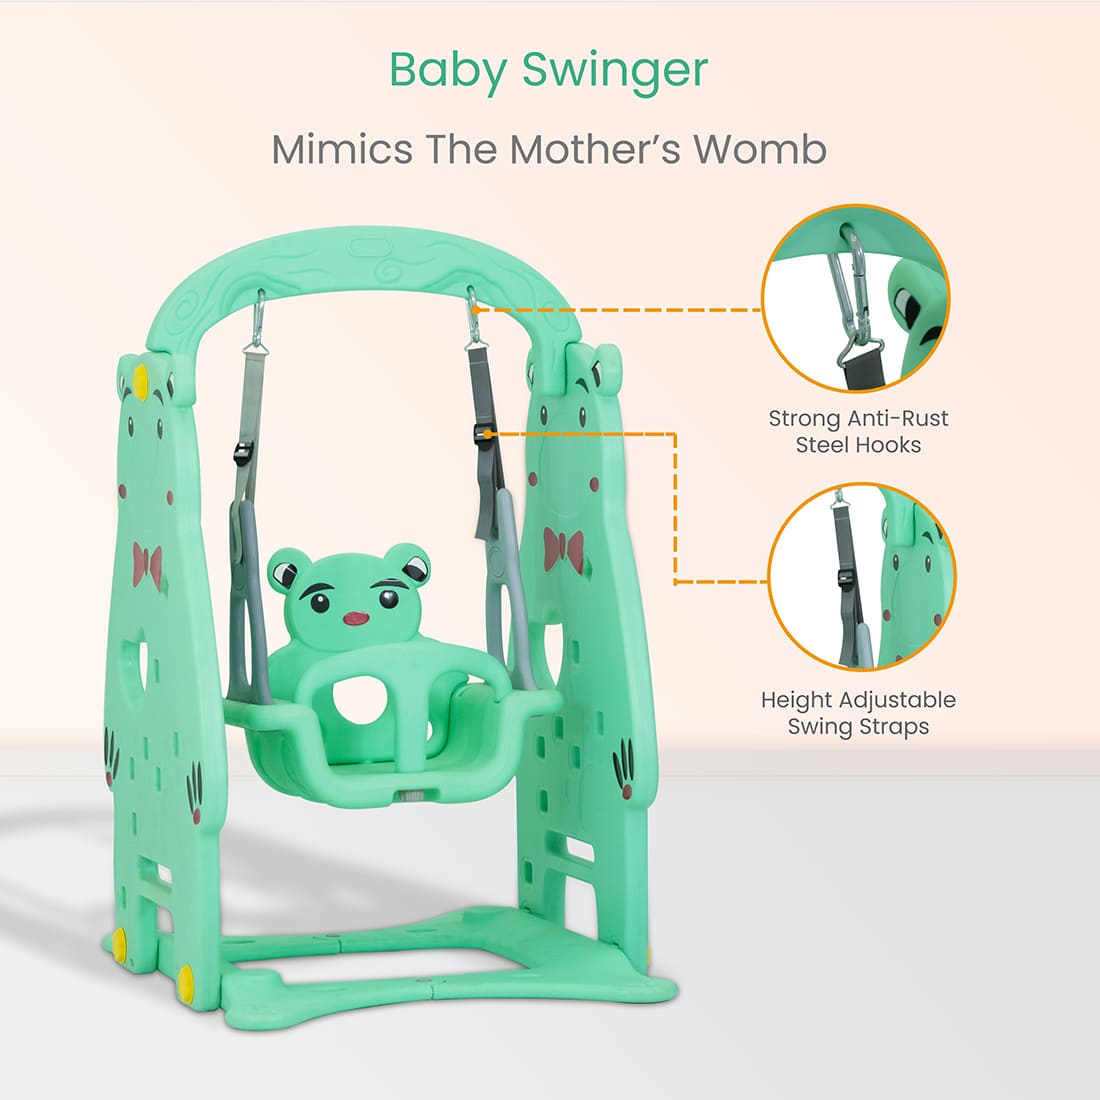 Baby Swinger